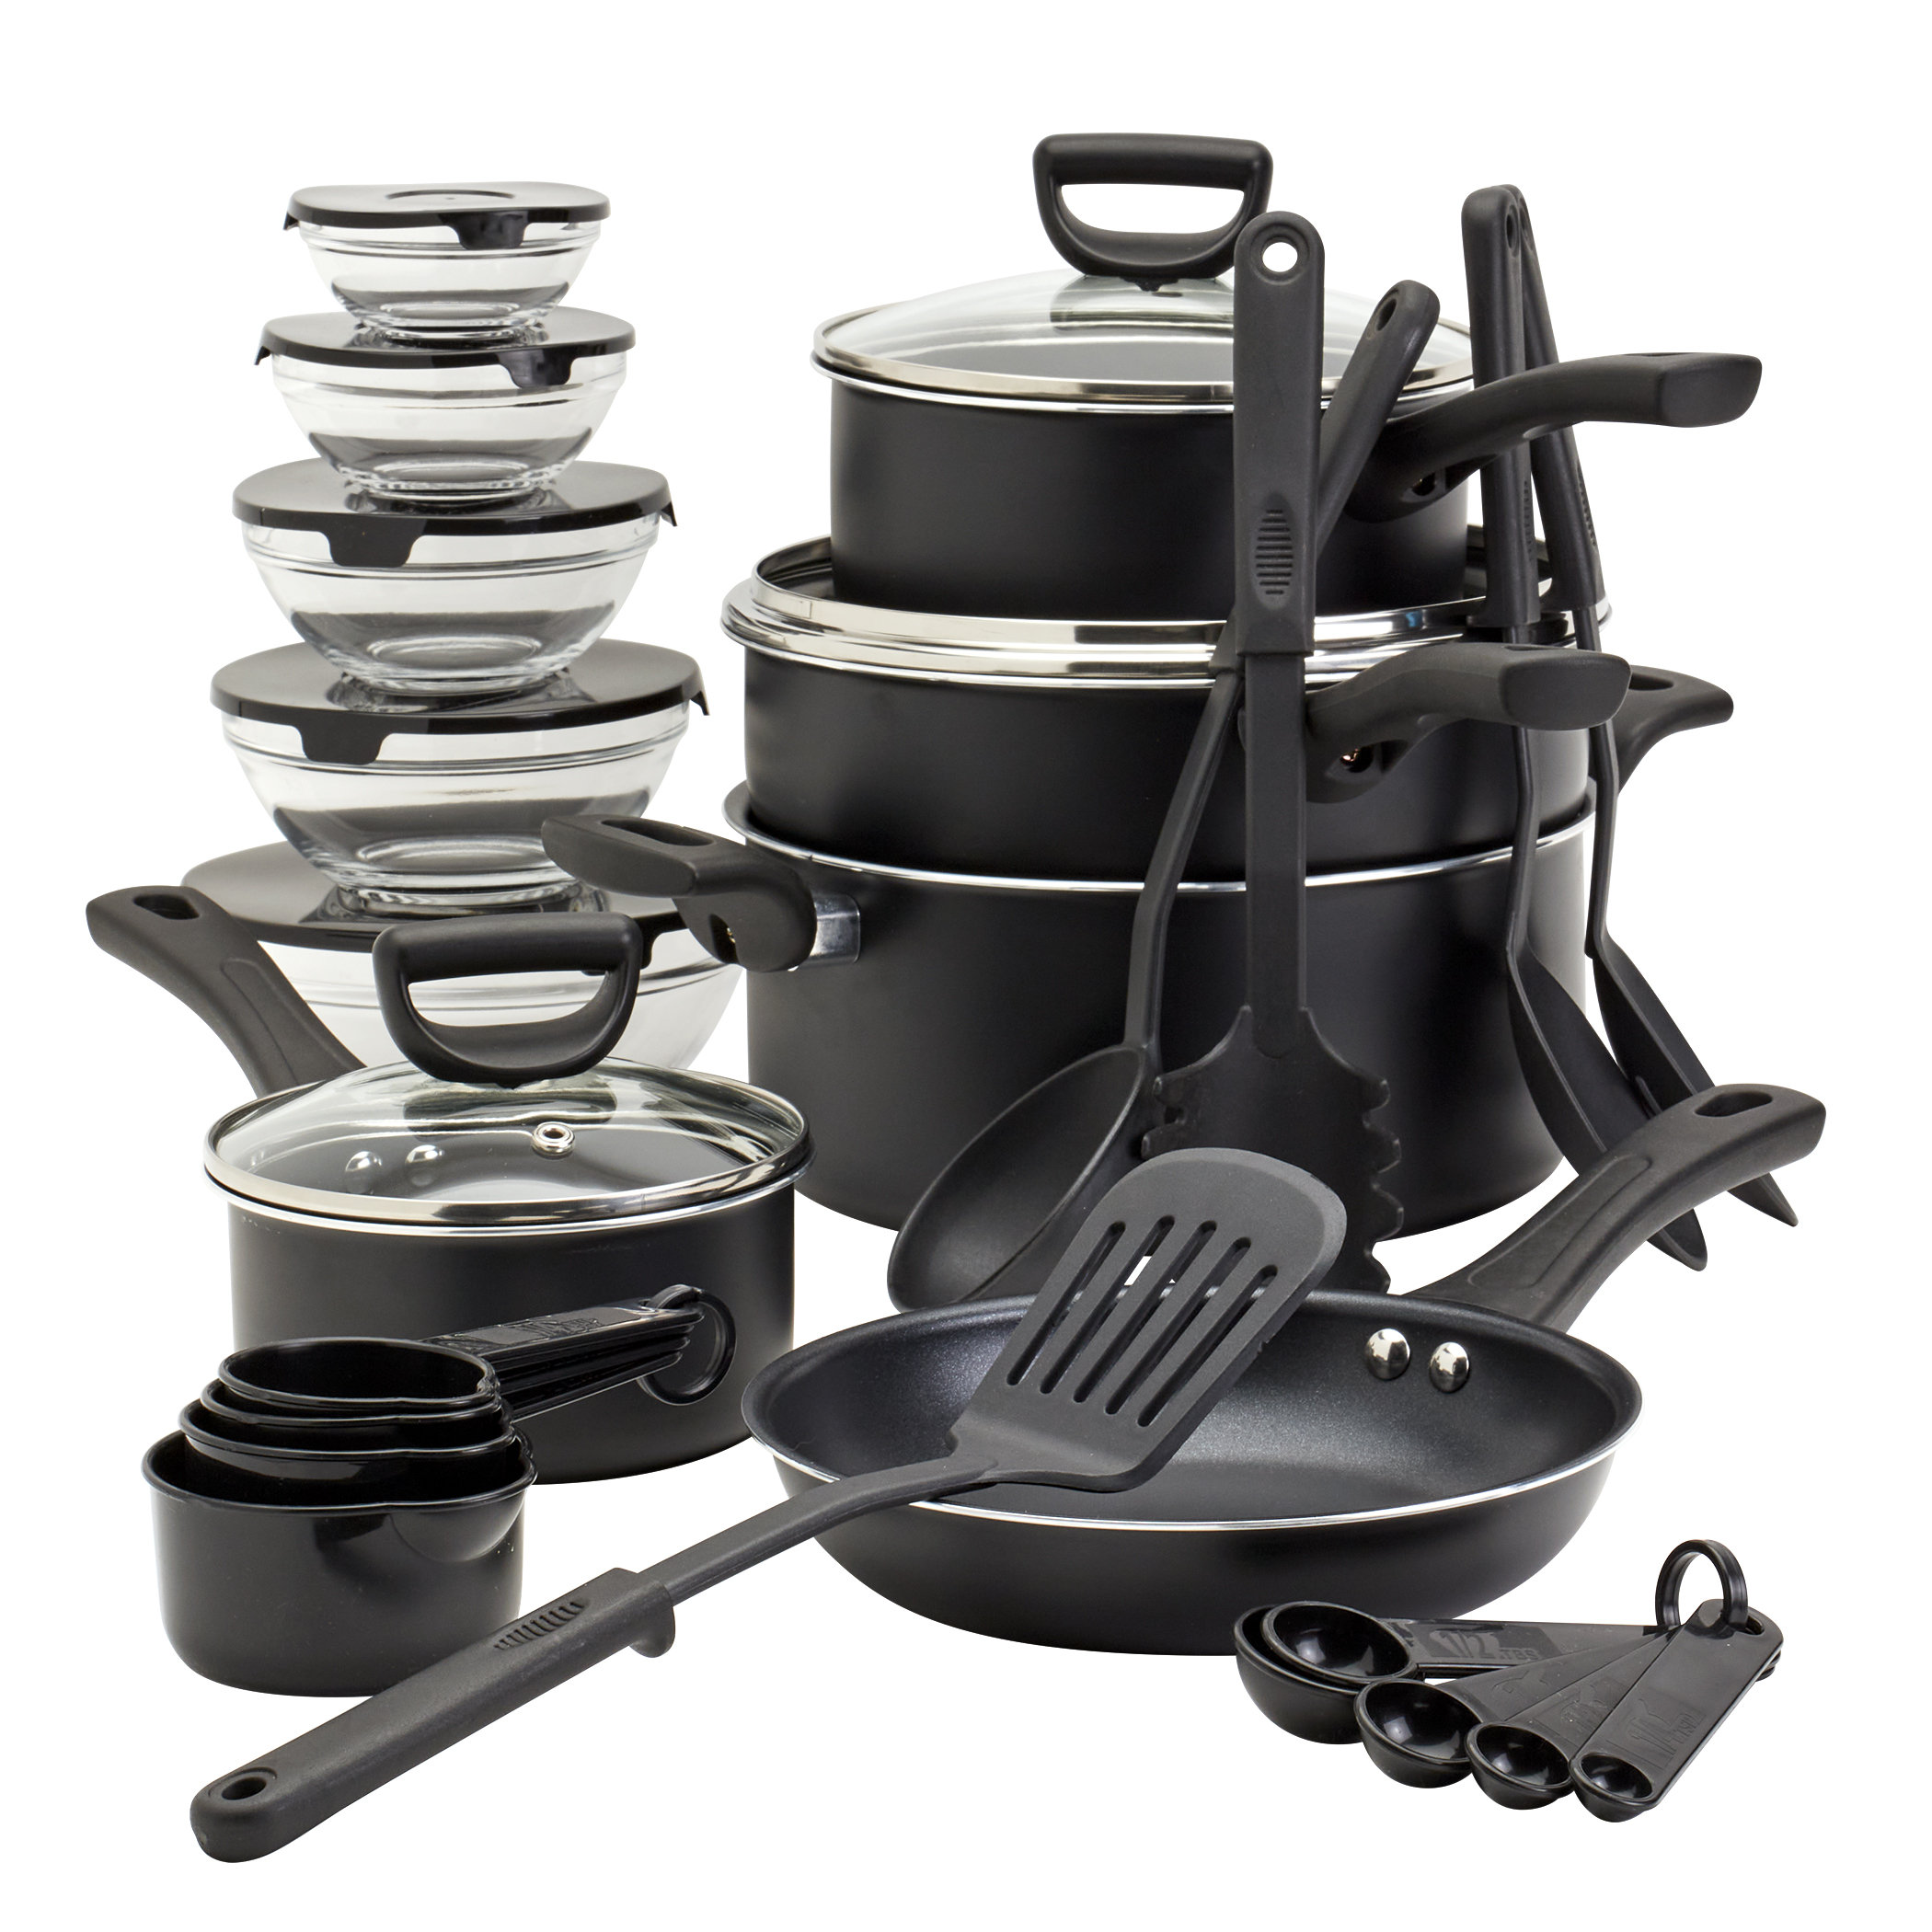 https://assets.wfcdn.com/im/01290791/compr-r85/2539/253928190/basic-essentials-32pc-non-stick-aluminum-cookware-set.jpg